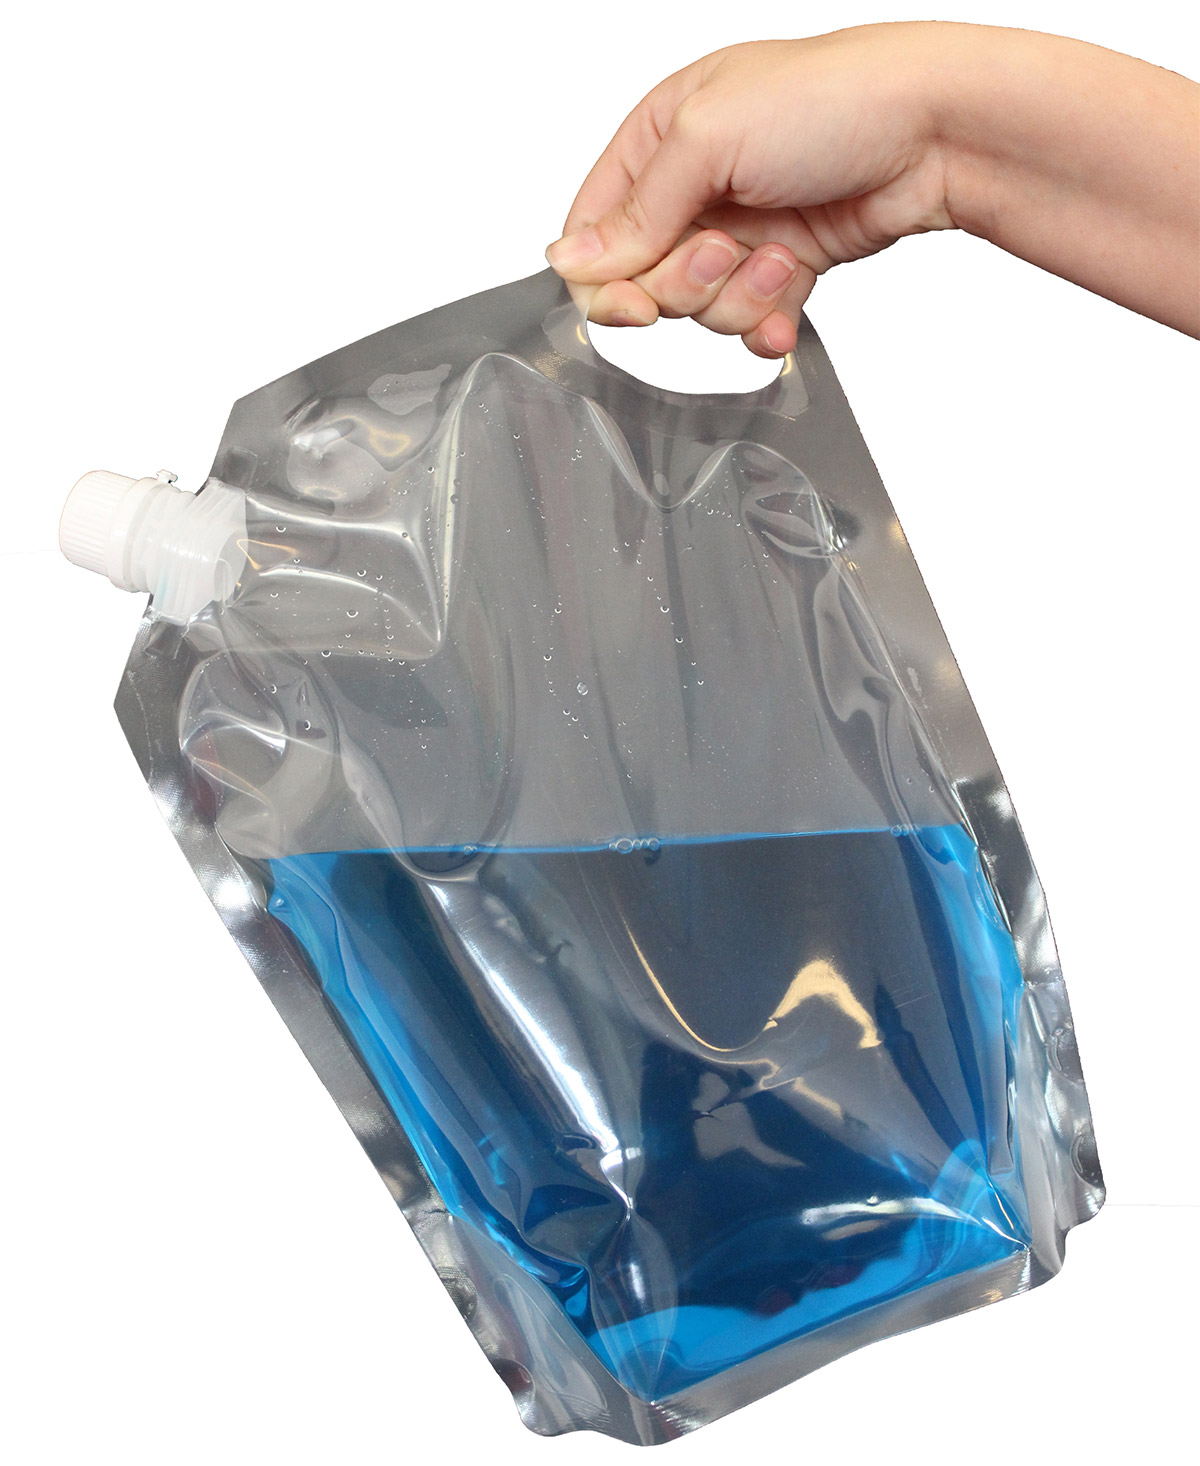 Сок можно выпить из герметичного пакета. Пакет для жидкости. Пластиковый пакет. Пластиковый мешок для воды. Герметичные пакеты для воды.